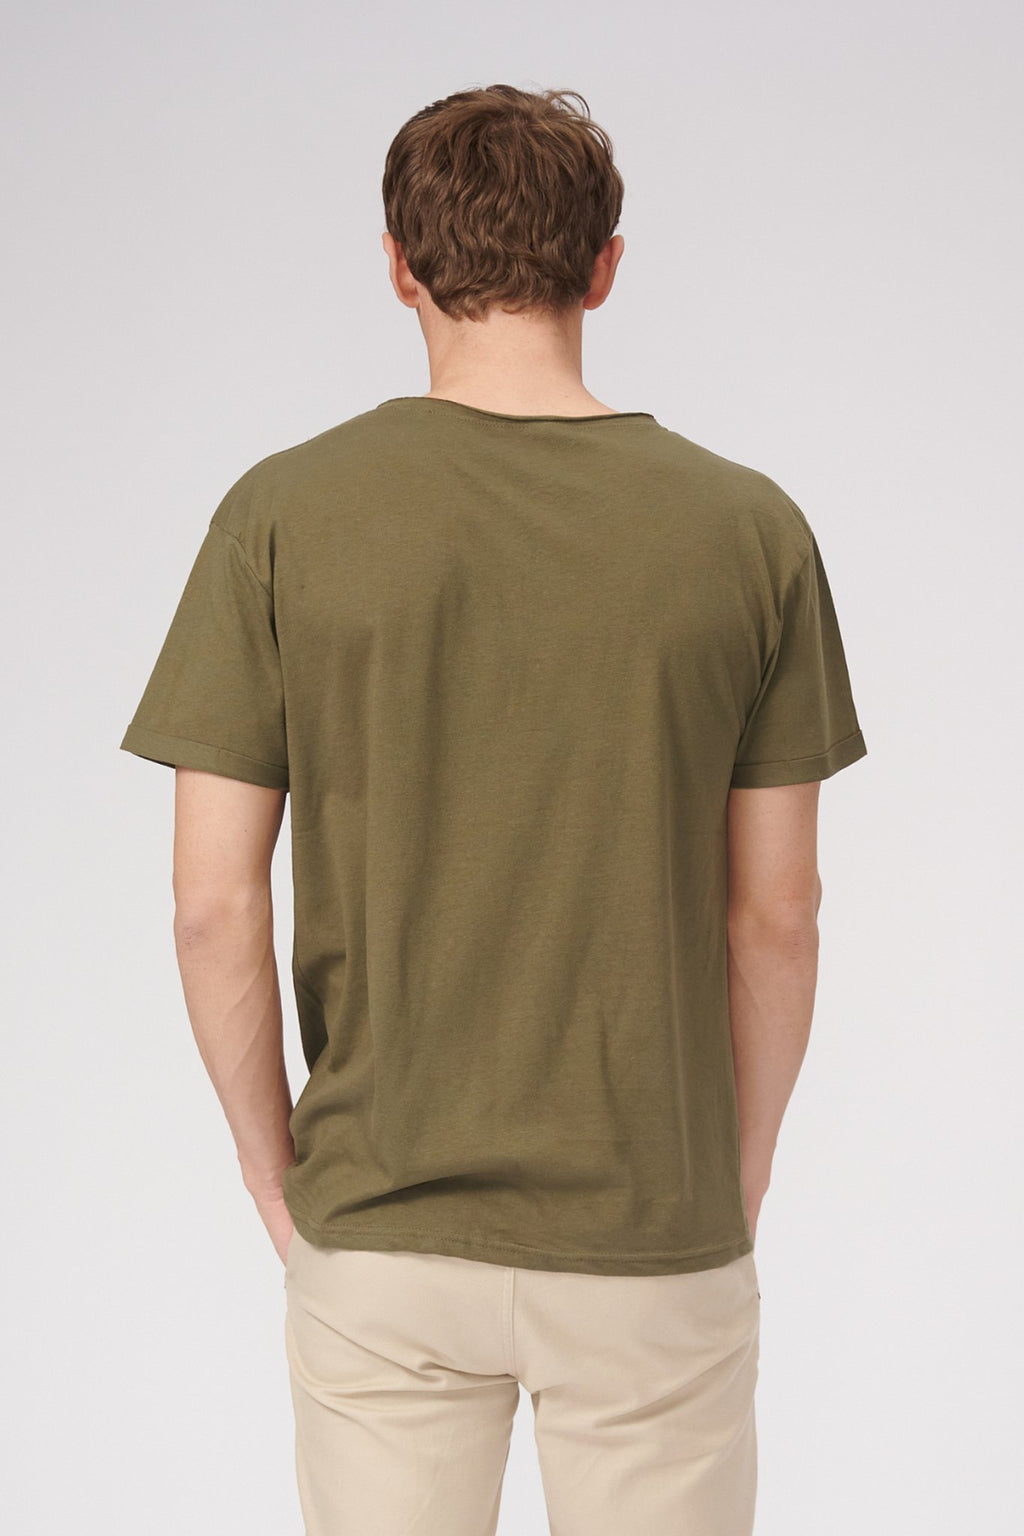 生颈T恤 - 橄榄绿色